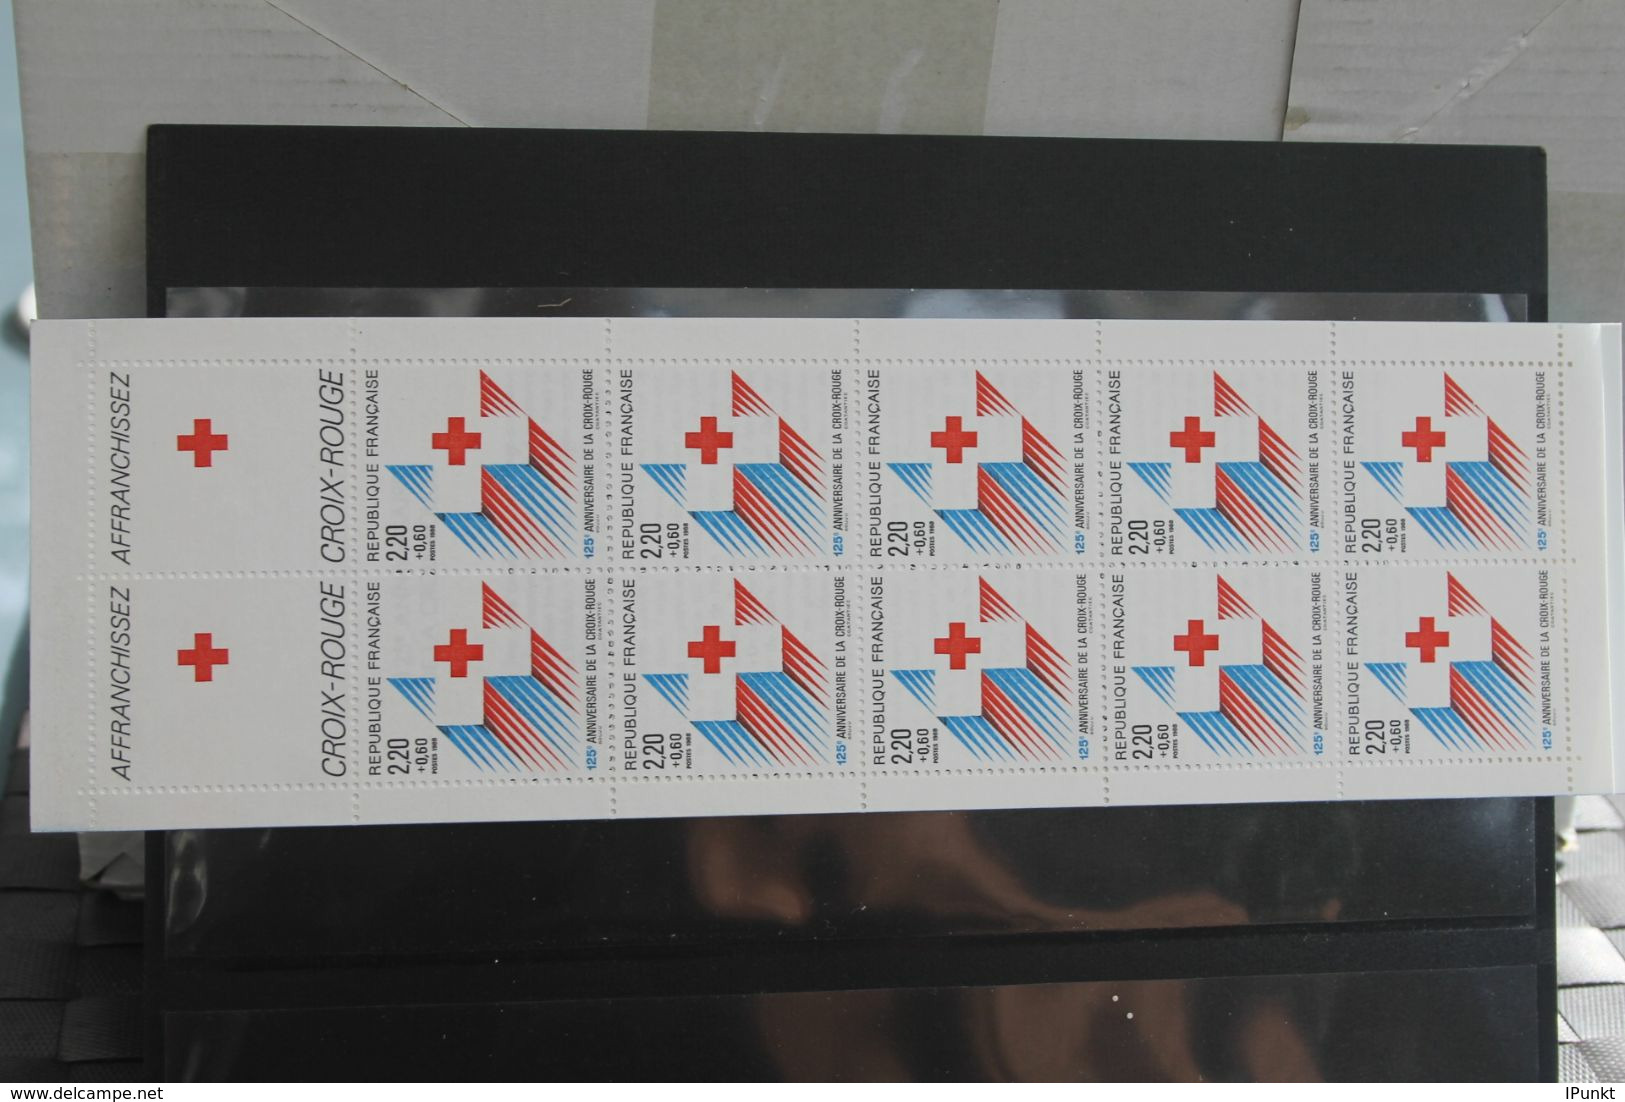 France 1988, 2636-2695; postfrisch, Frankreich Jahrgang 1988, 51 Werte, 4 MH, überkomplett, 4 Steckkarten